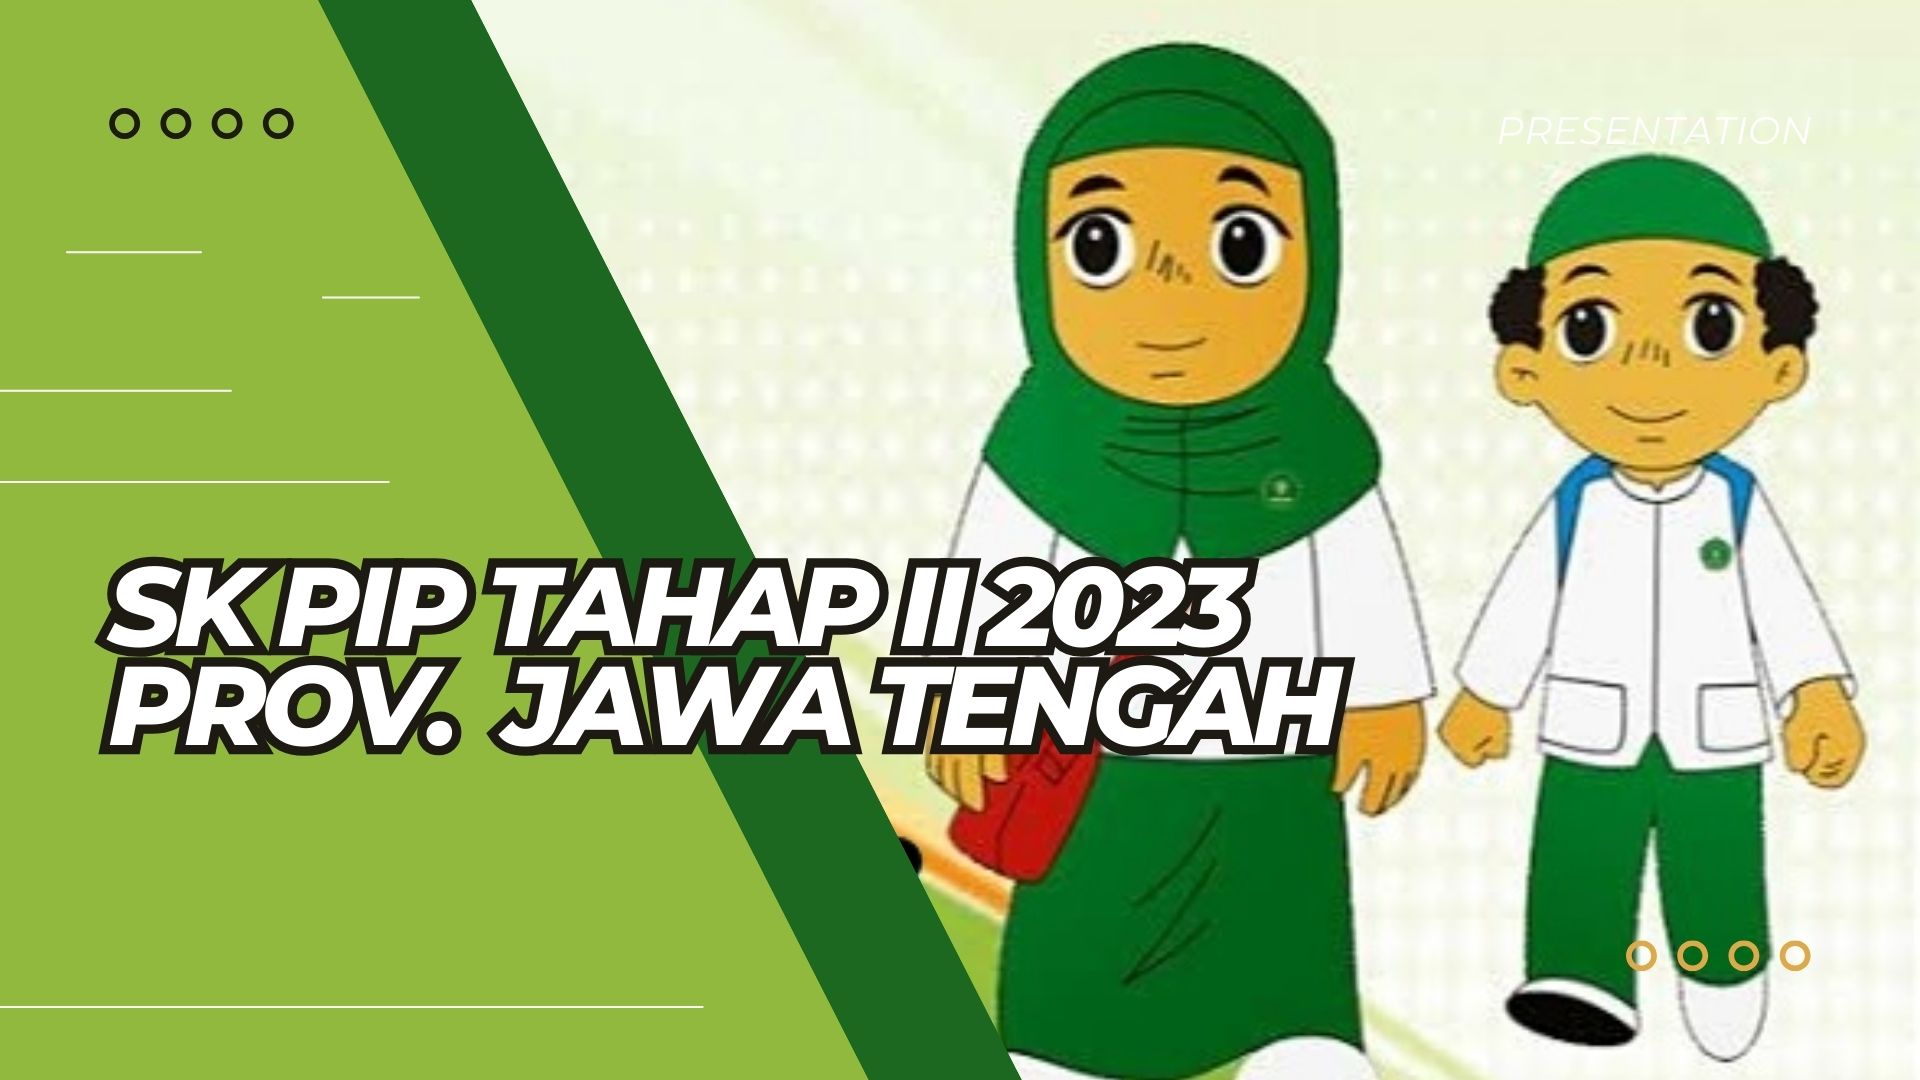 SK PIP Tahap II 2023 Untuk MI, MTs, dan MA Jawa Tengah